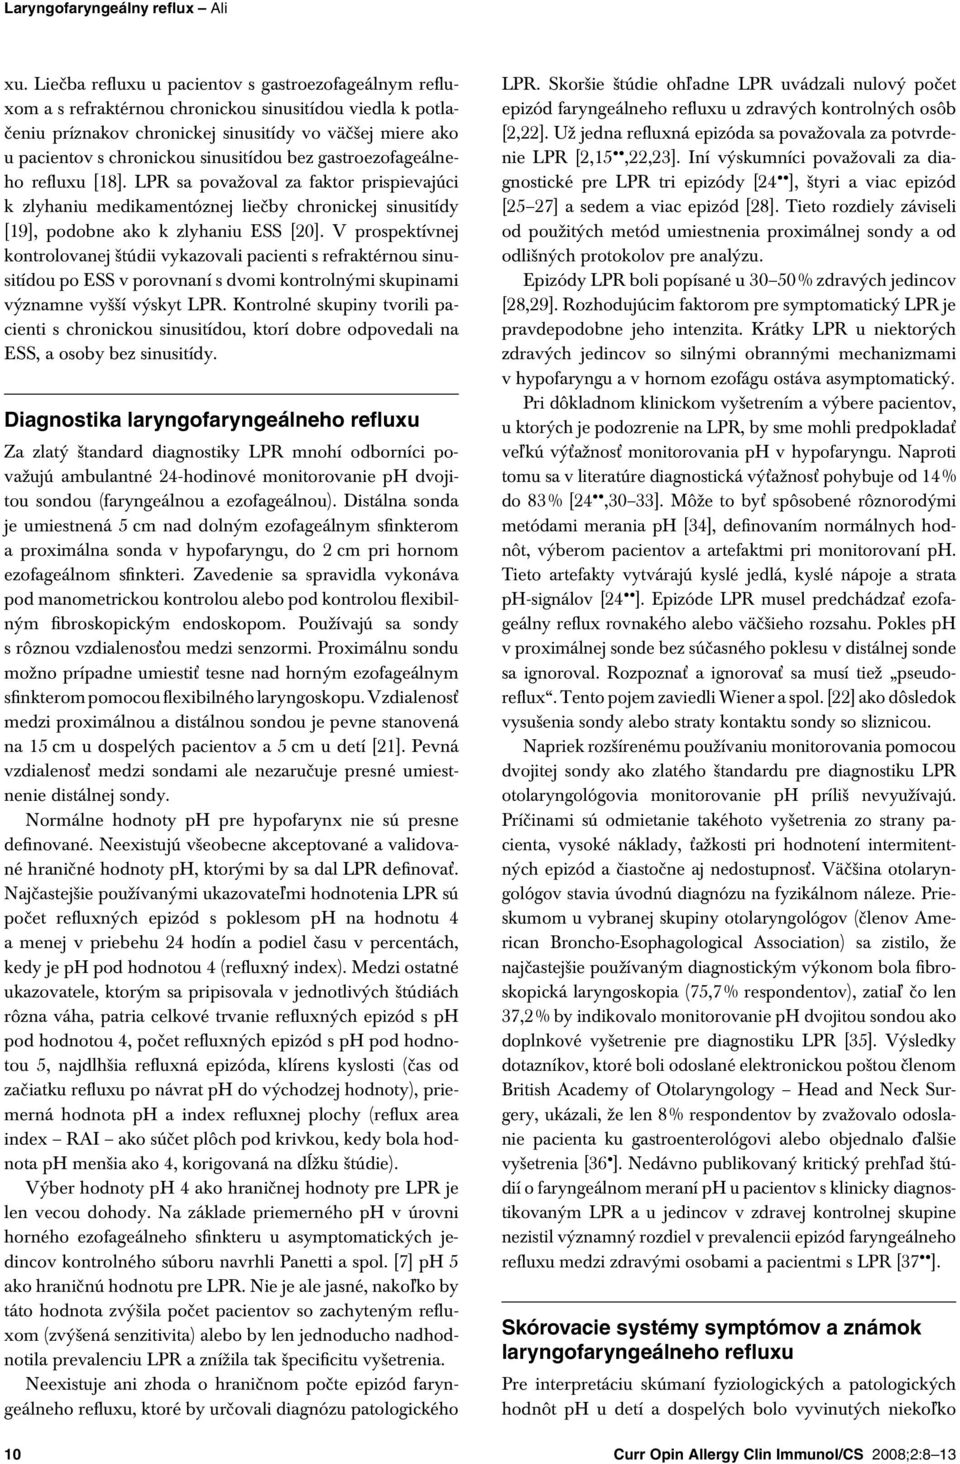 sinusitídou bez gastroezofageálneho refluxu [18]. LPR sa považoval za faktor prispievajúci k zlyhaniu medikamentóznej liečby chronickej sinusitídy [19], podobne ako k zlyhaniu ESS [2].